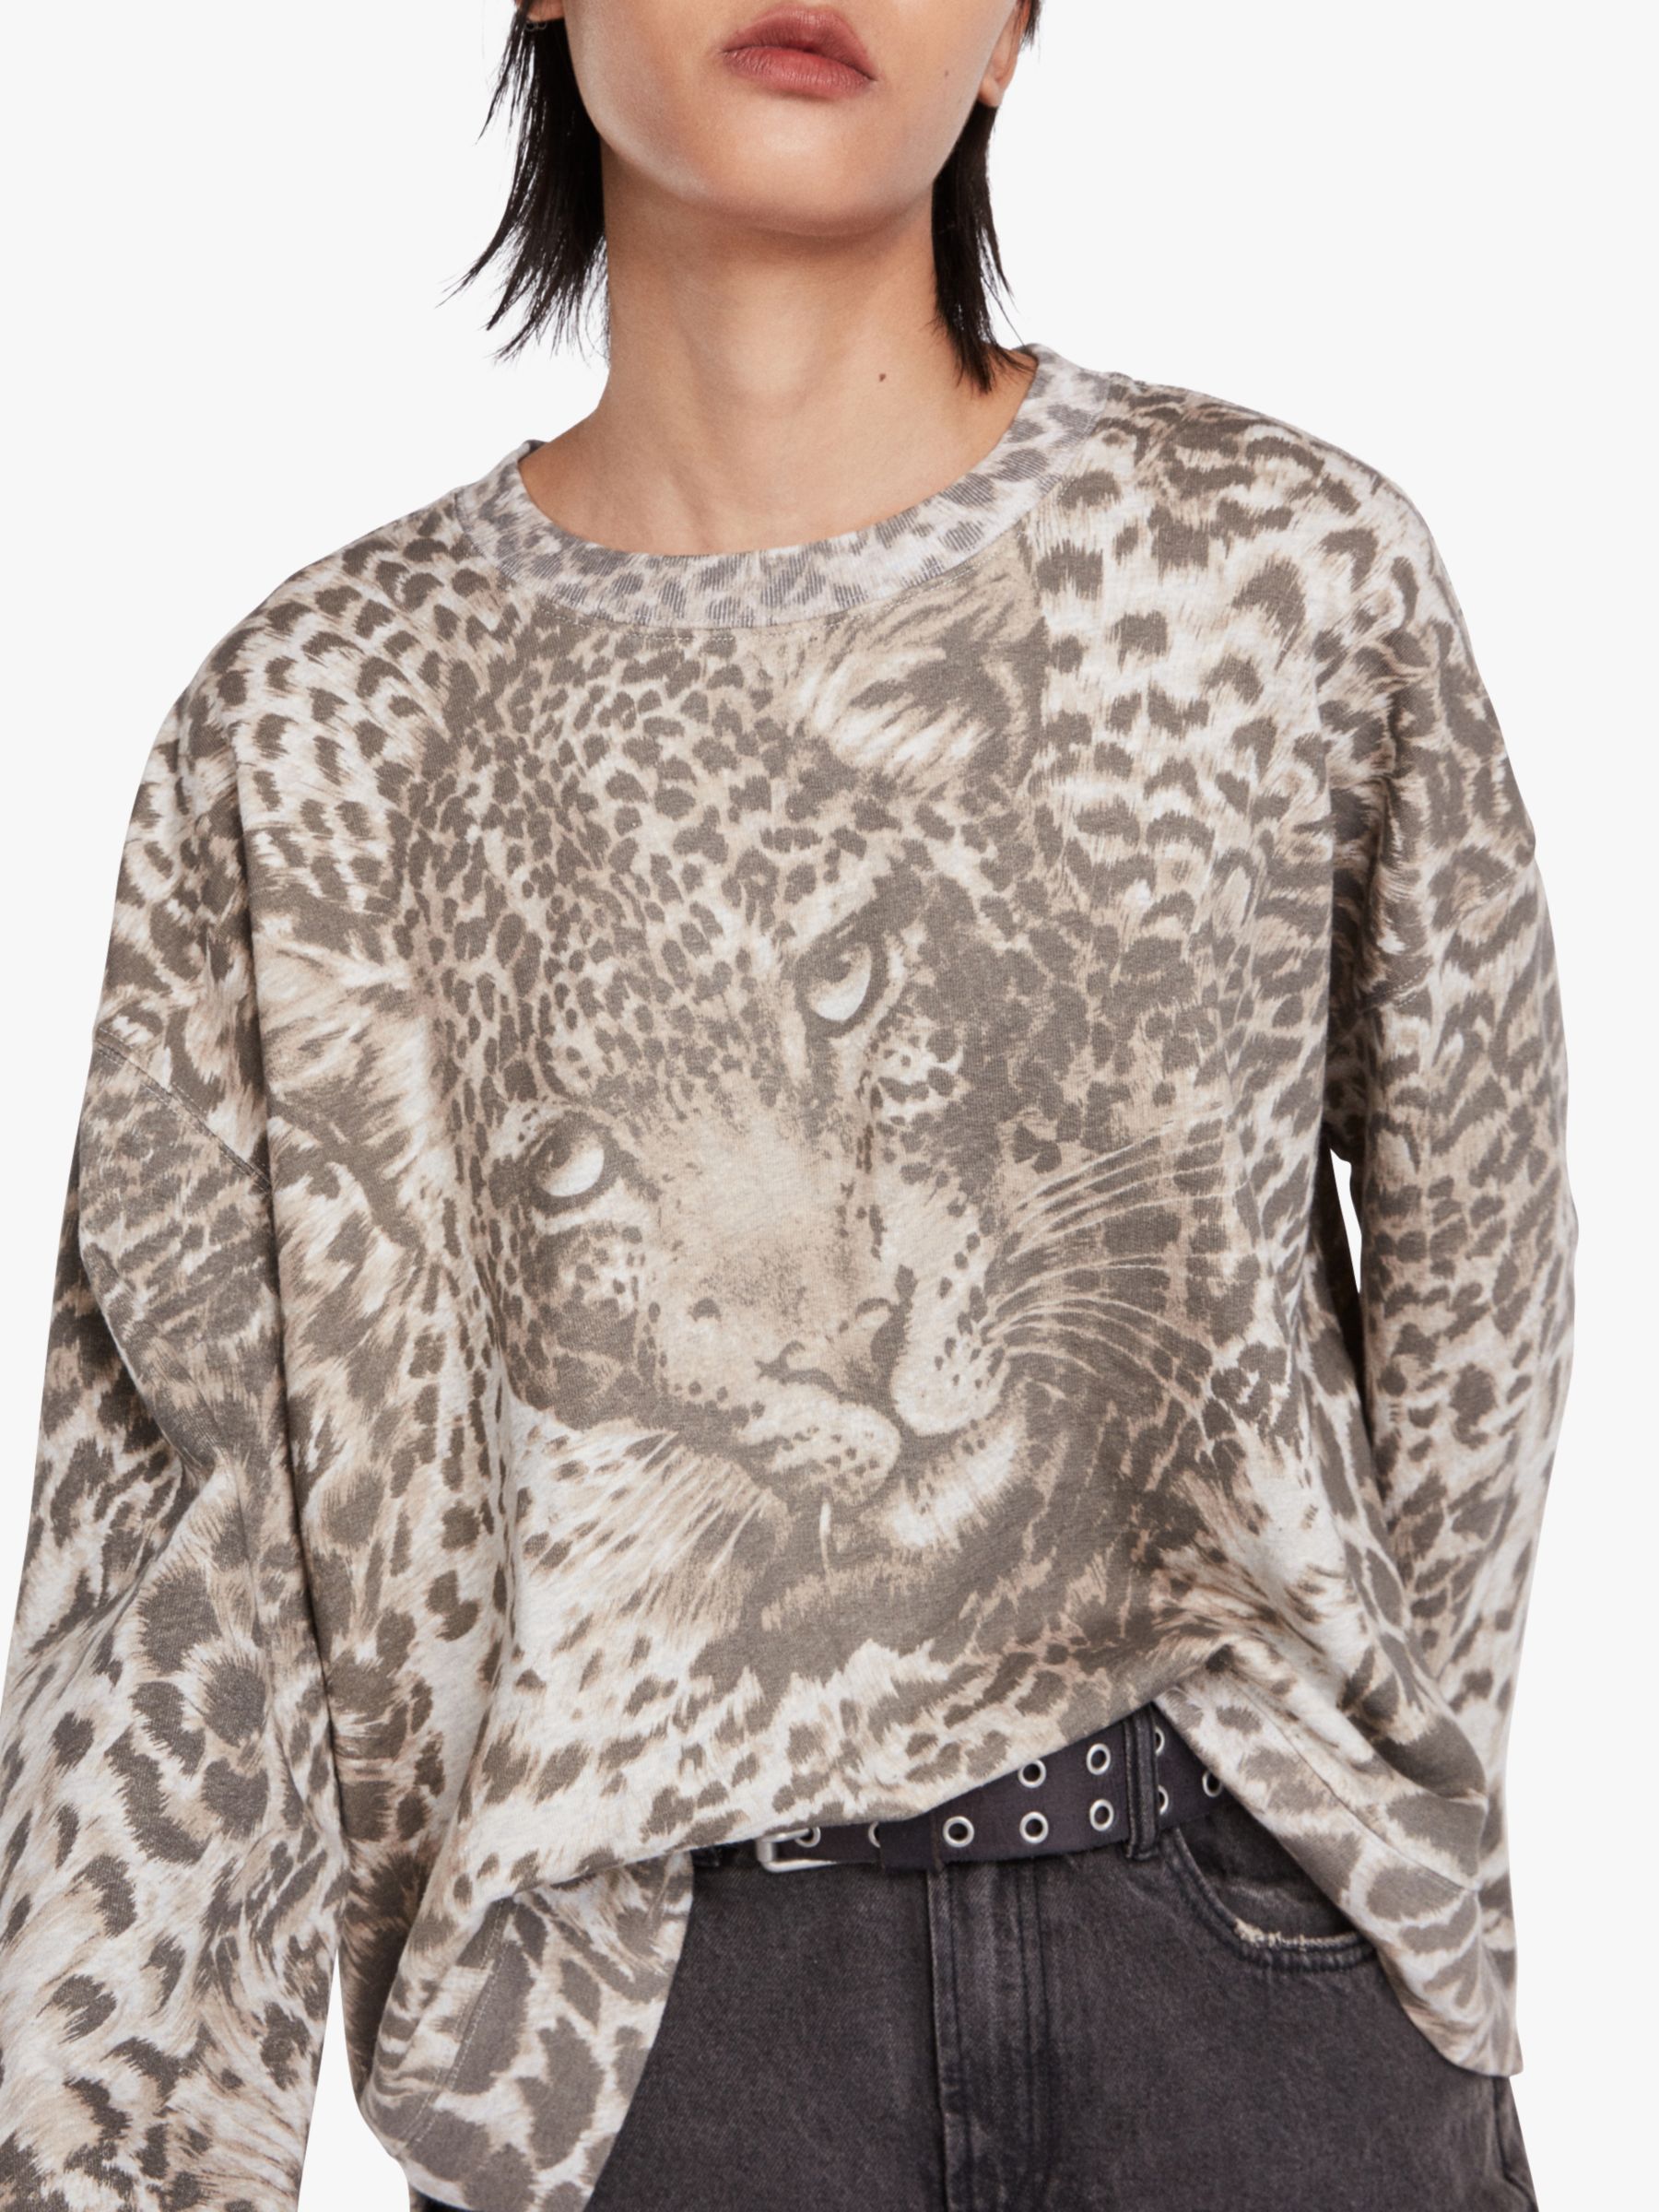 AllSaints Pardos Animal Sweatshirt, Marl Grey